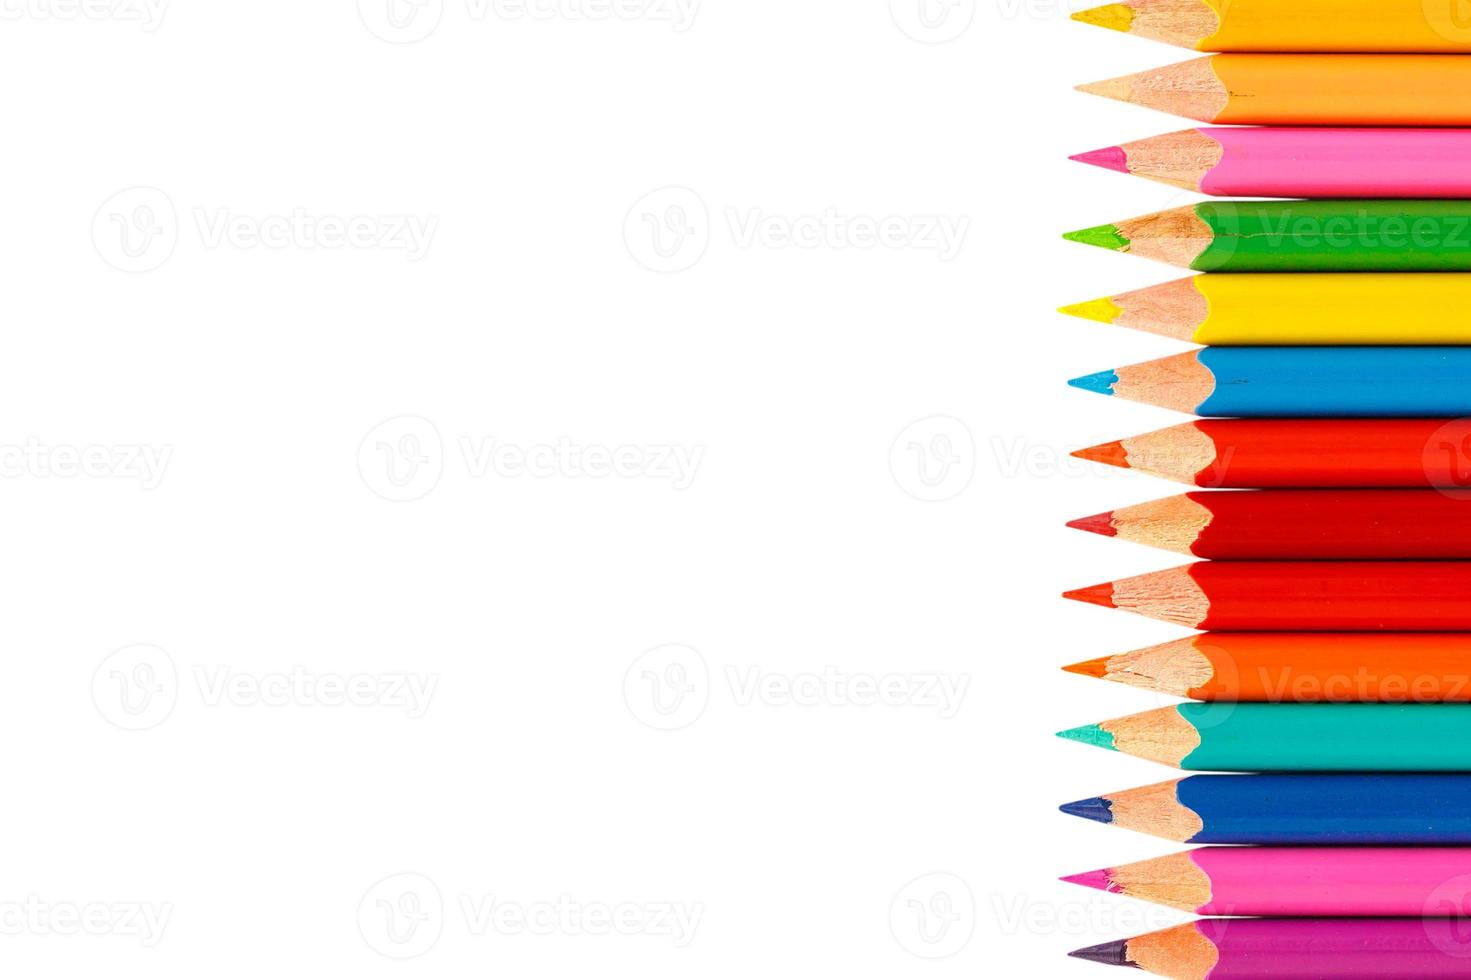 matite colorate isolati su sfondo bianco foto